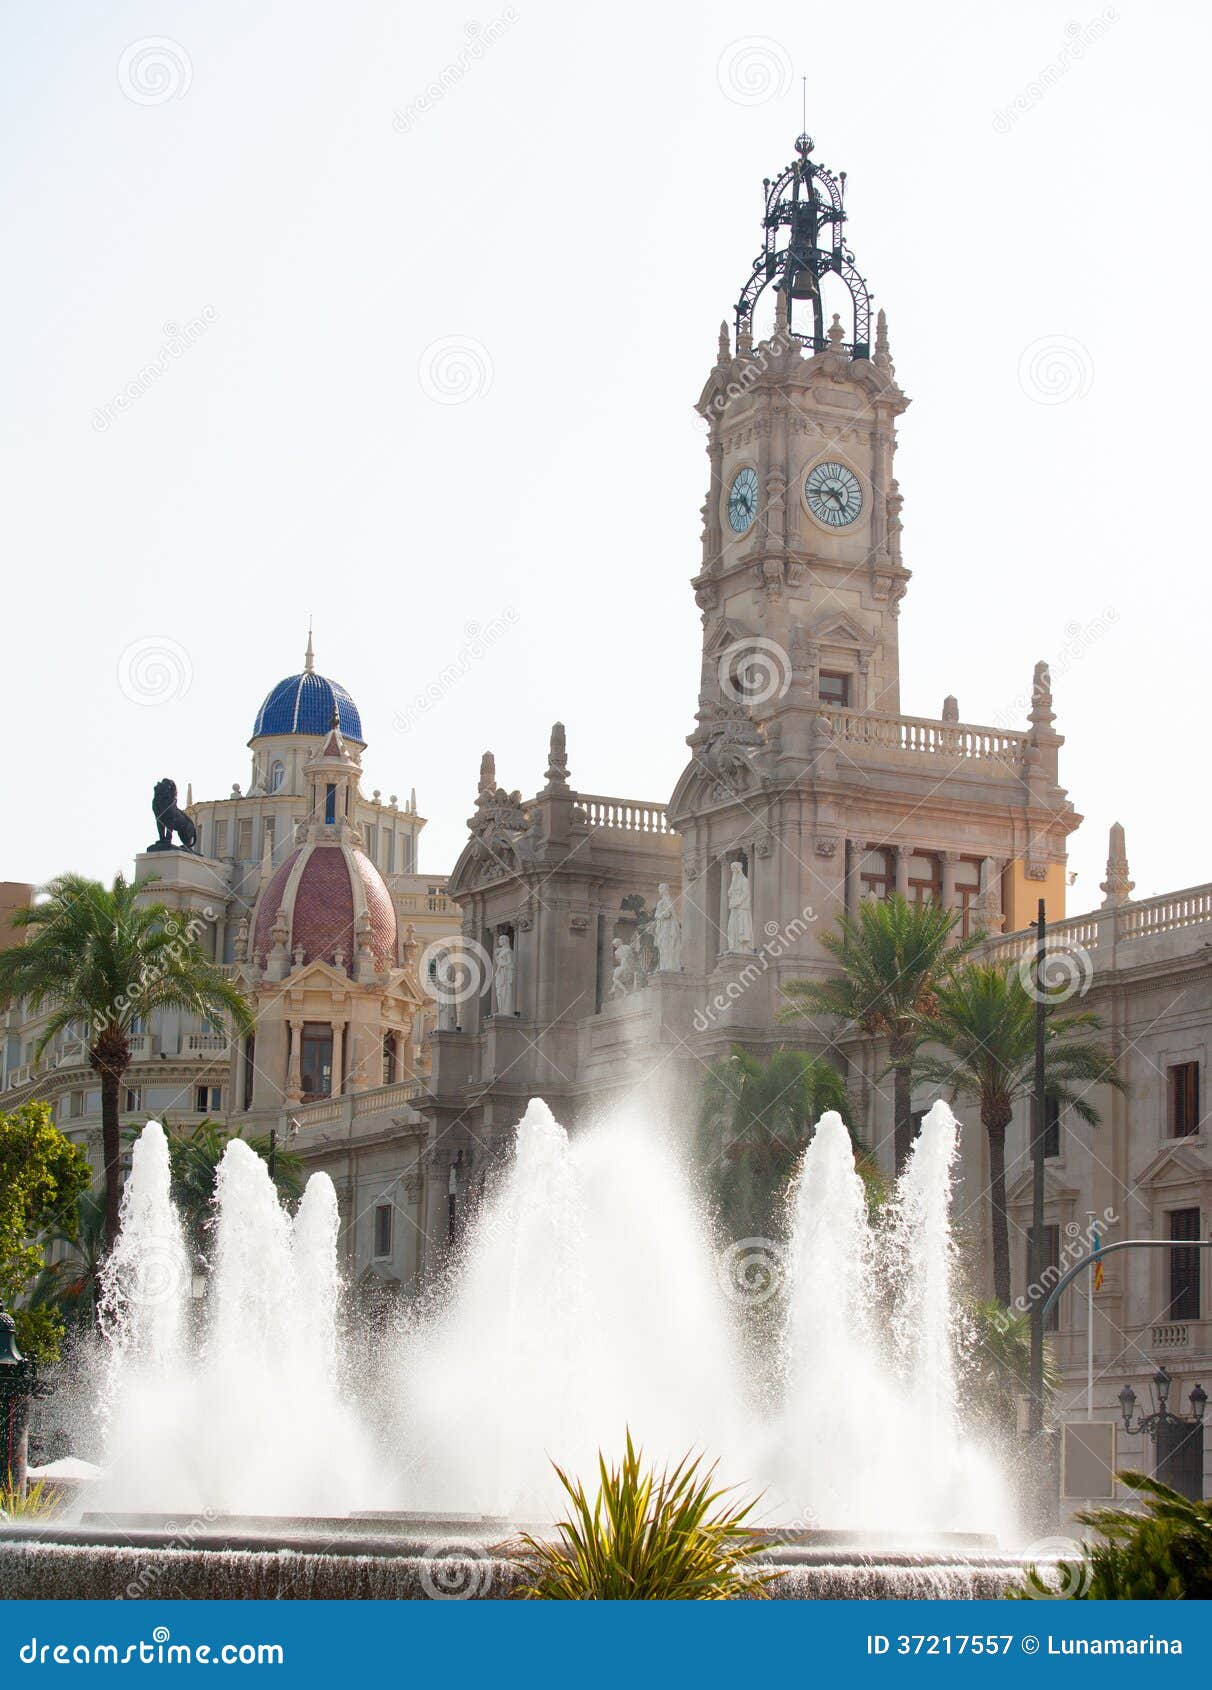 valencia plaza del ayuntamiento city town hall square